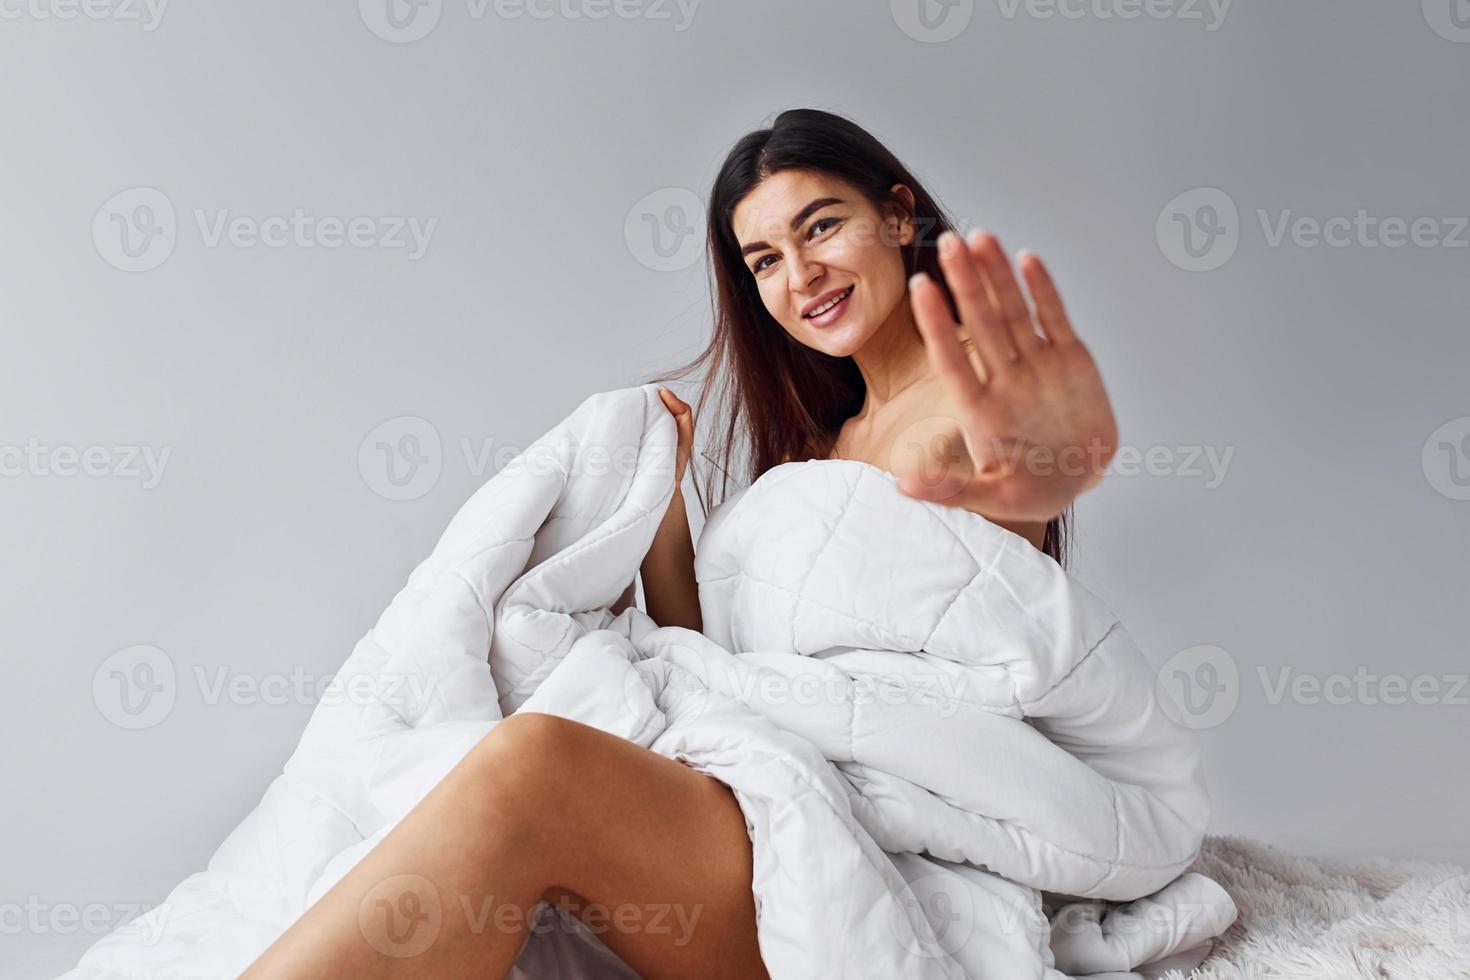 shows hou op gebaar. vrouw in ondergoed zit in de studio tegen wit achtergrond foto